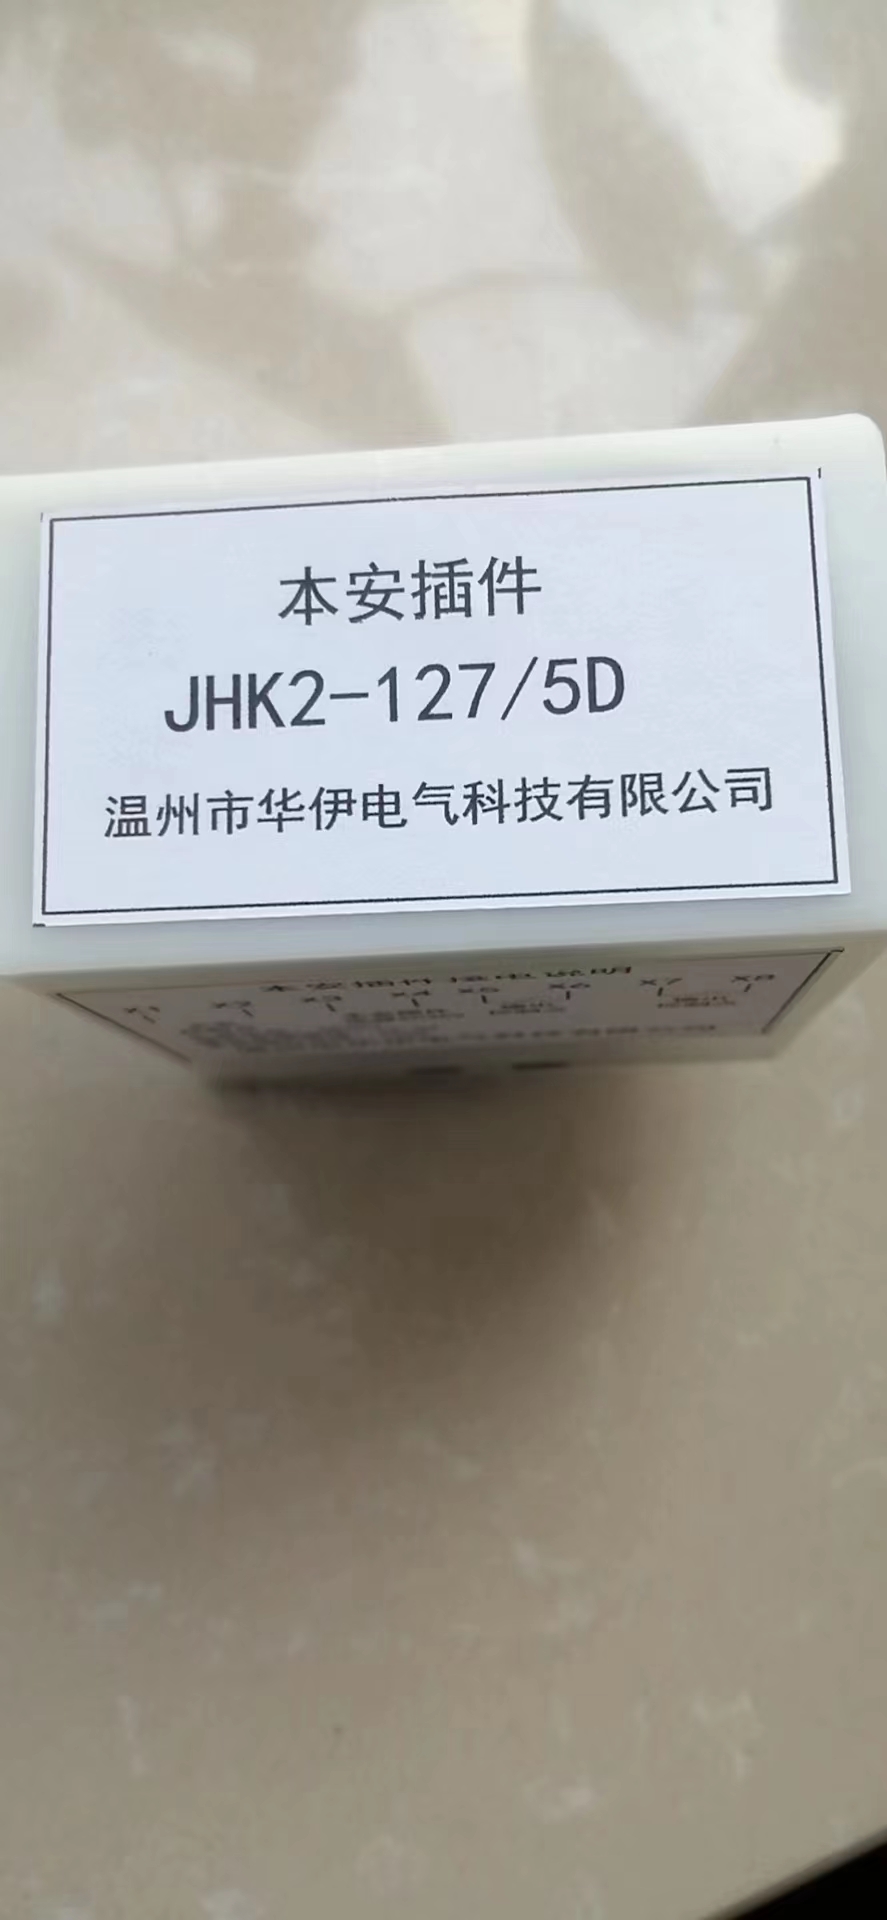 JHK2-127/5D本安36/2控制继电器